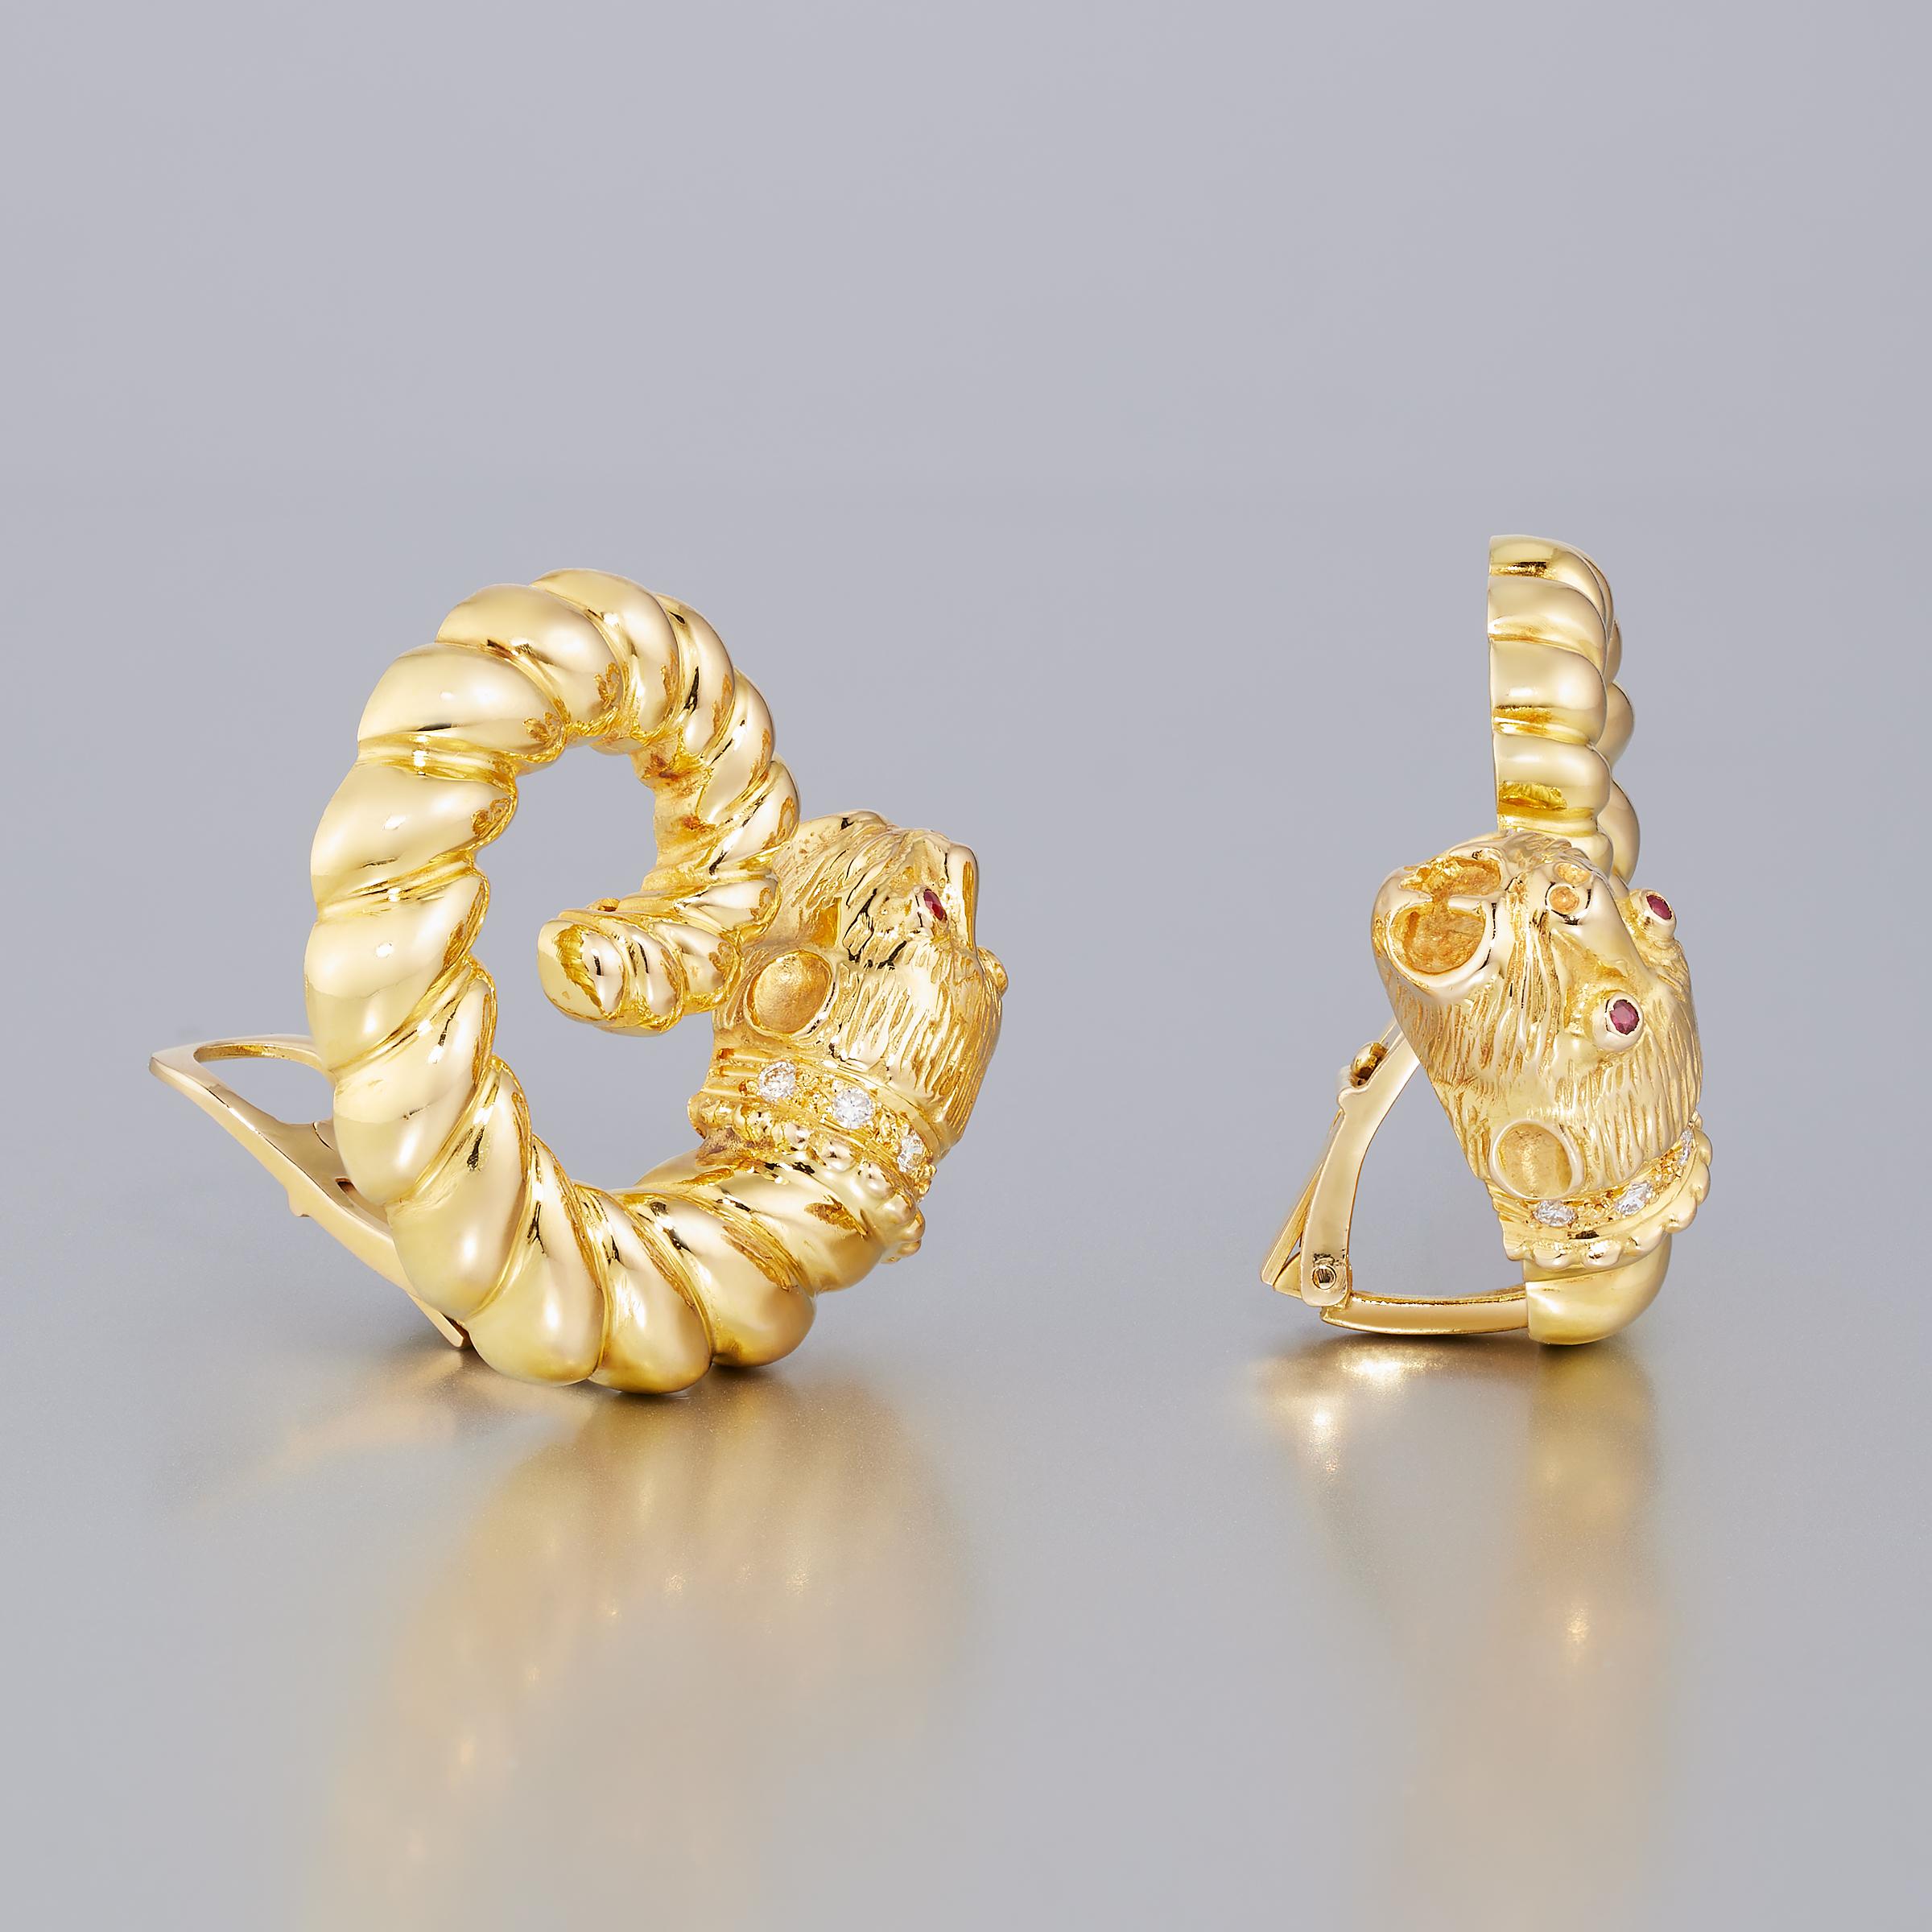 Ein auffälliges Paar Vintage-Ohrringe von Zolotas aus 18 Karat Gelbgold mit funkelnden Diamant- und Rubin-Akzenten. Diese Ohrringe sind Teil der Heritage-Kollektion von Zolotas, einem renommierten griechischen Juwelierhaus, das 1895 in Athen